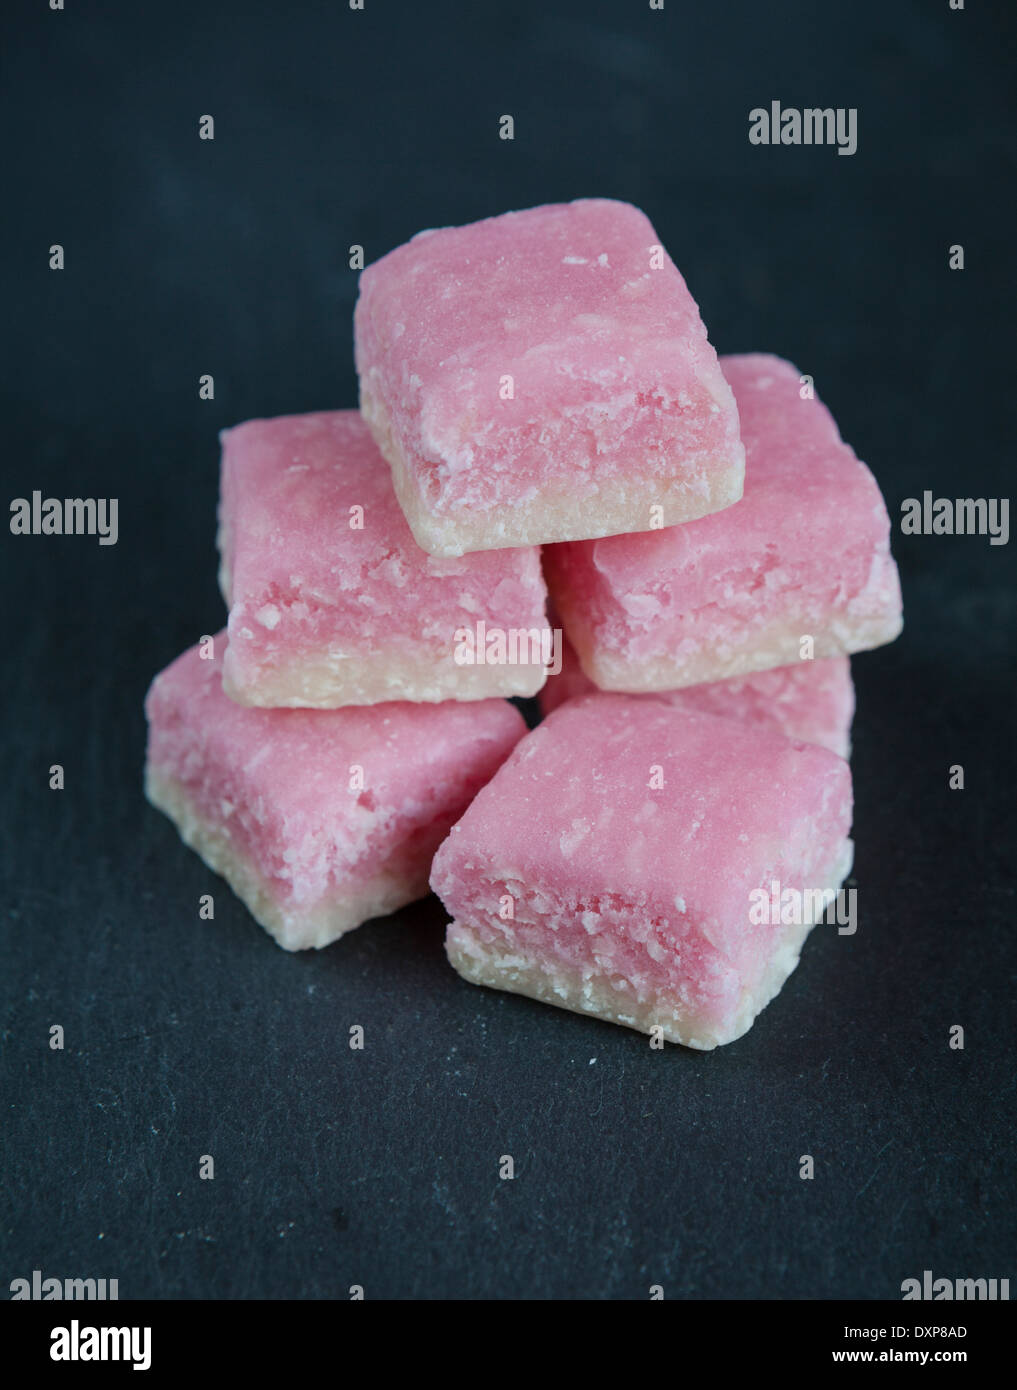 Un montón de rosa y blanco hielo de coco, un dulce tradicional hecha de coco desecado y azúcar, sobre un plato de servir de pizarra. Foto de stock